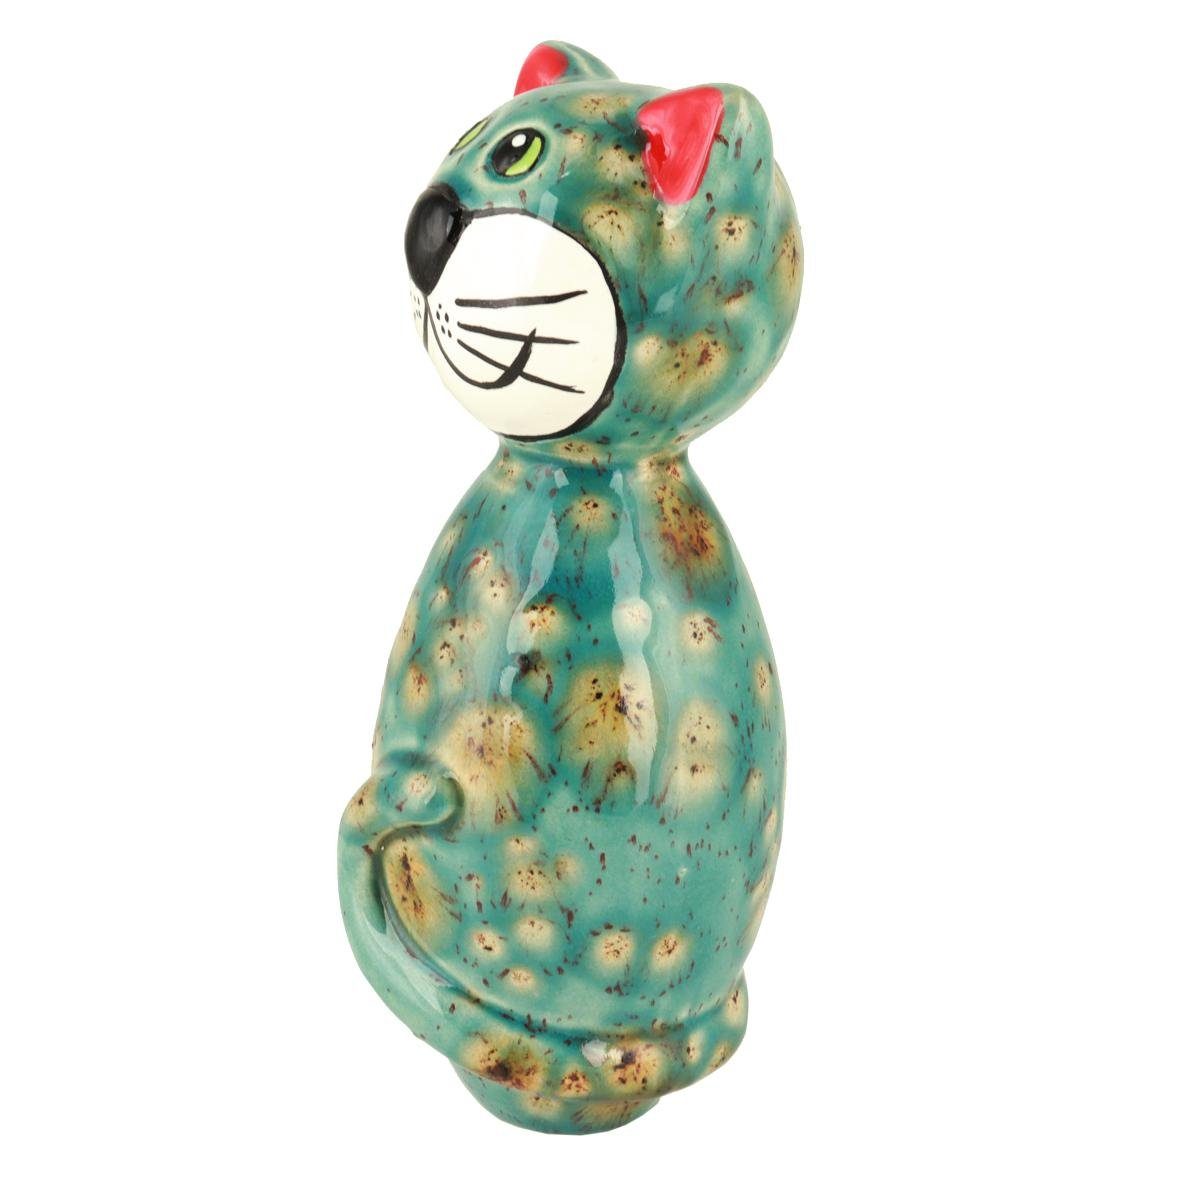 (Stück) MINI Keramik-Katze Gartenfigur mit Akzenten, Tangoo olivfarbenen Tangoo blaugrün